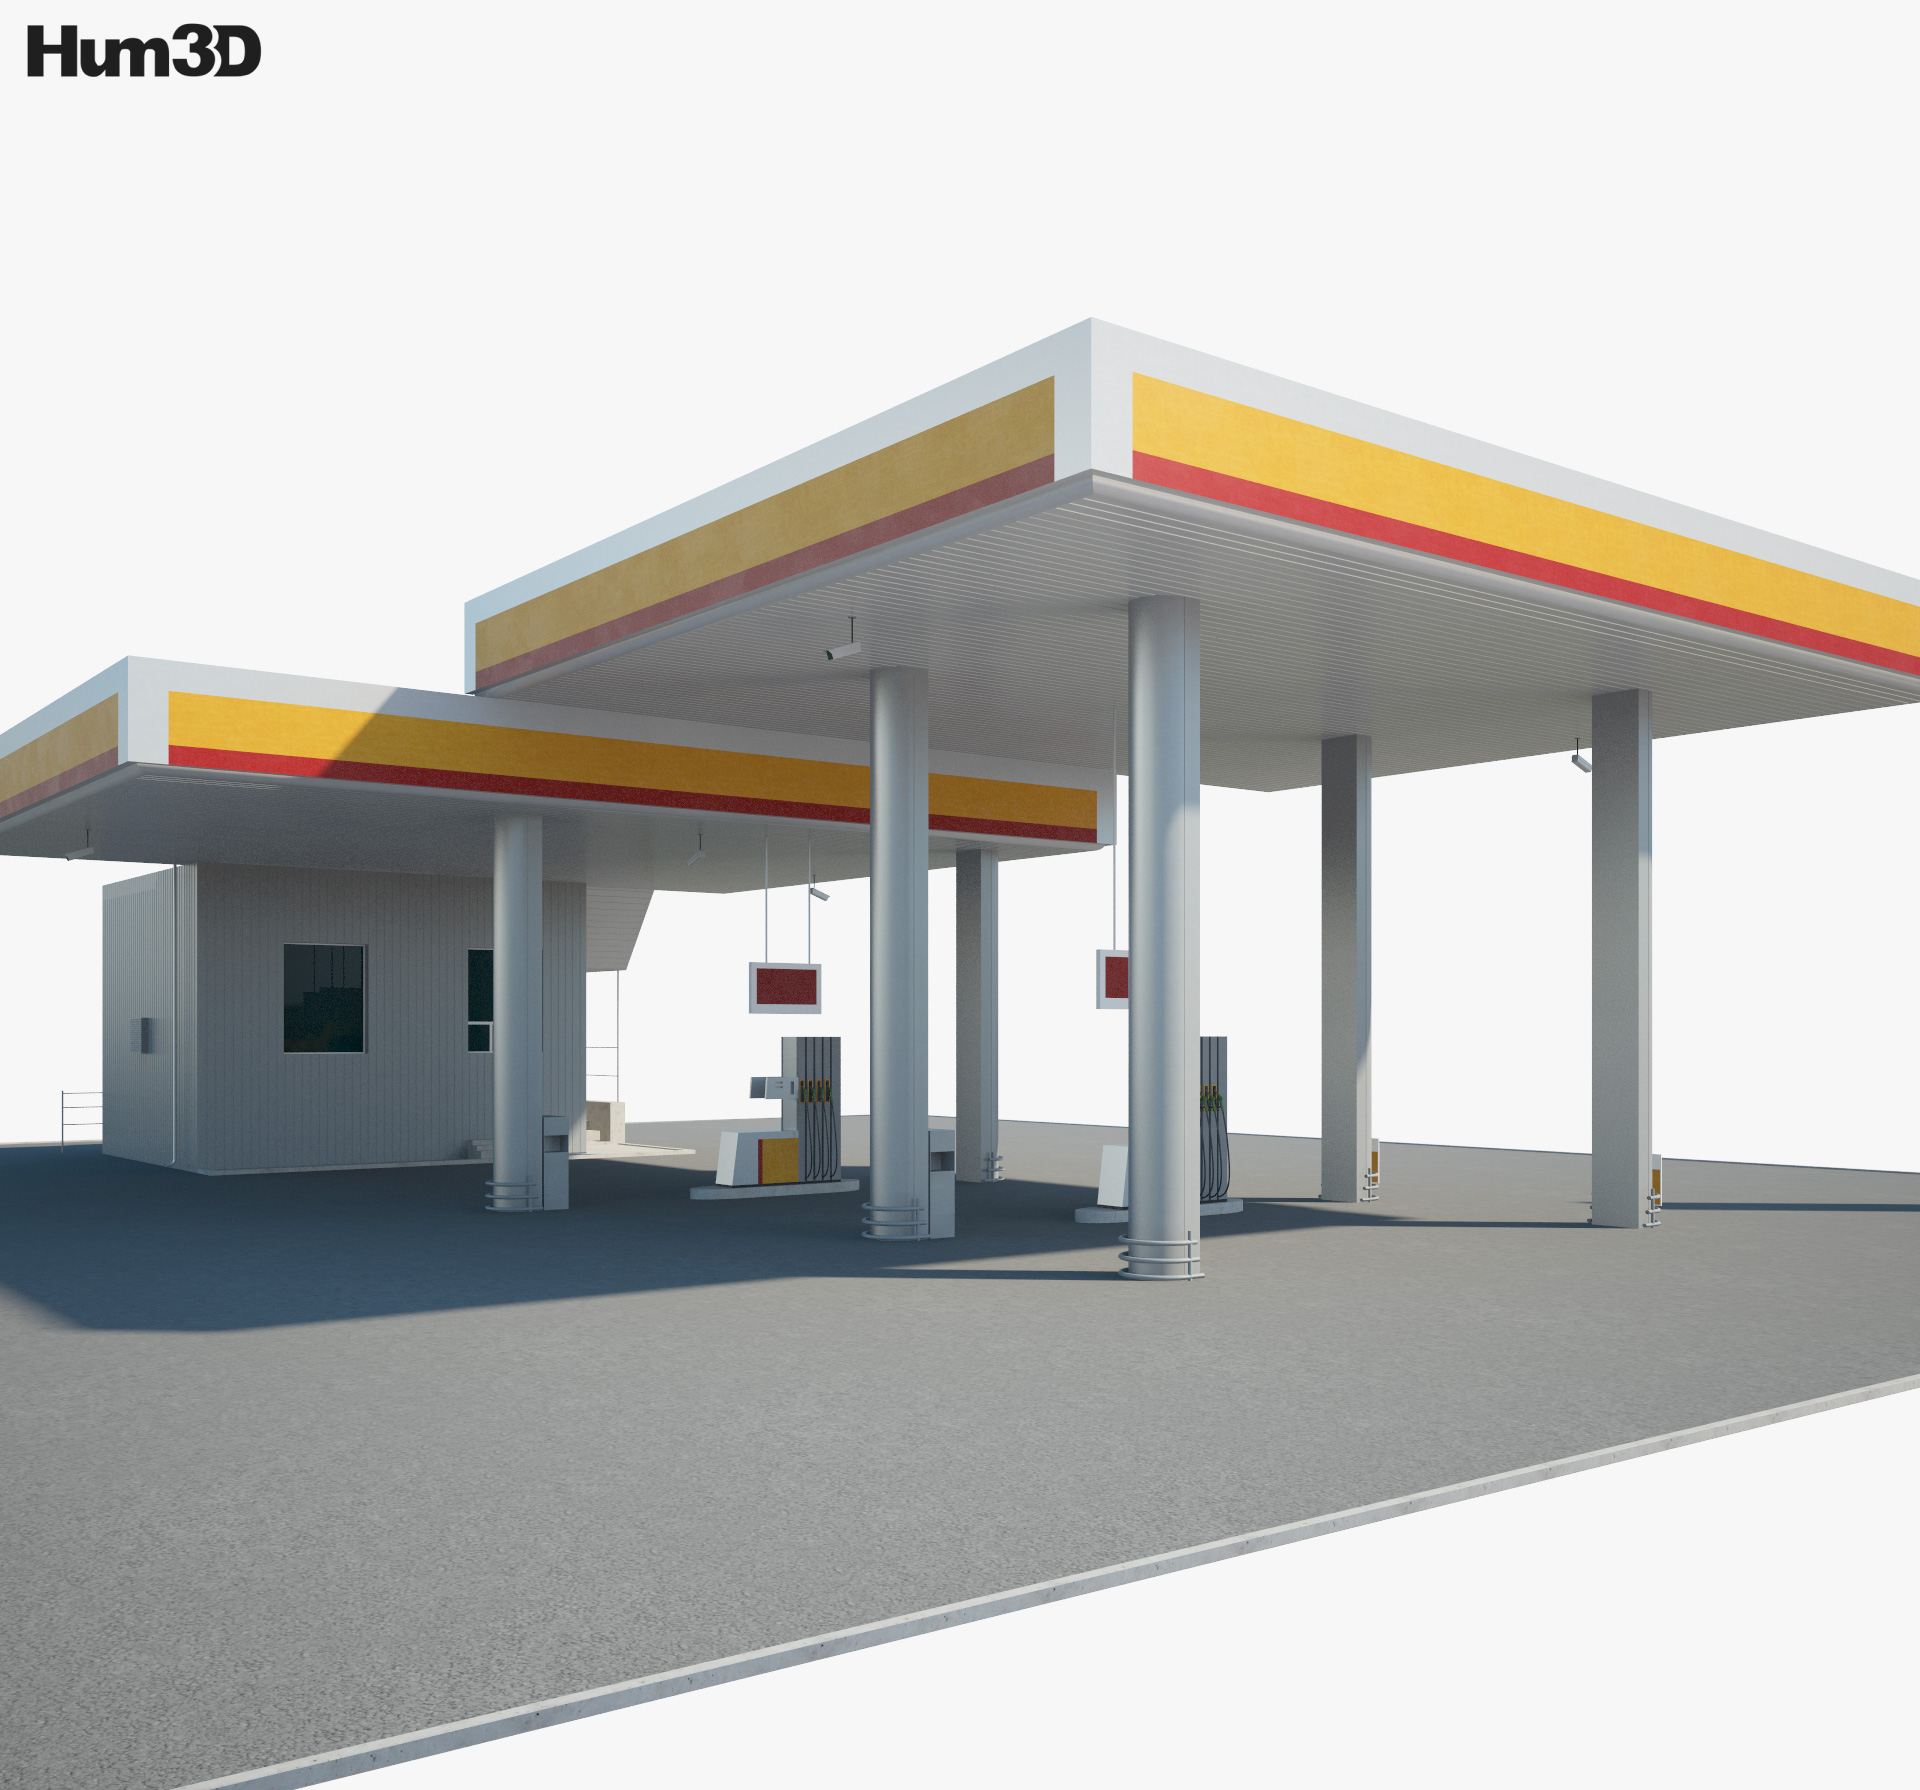 Shell ガソリンスタンド 001 3Dモデル